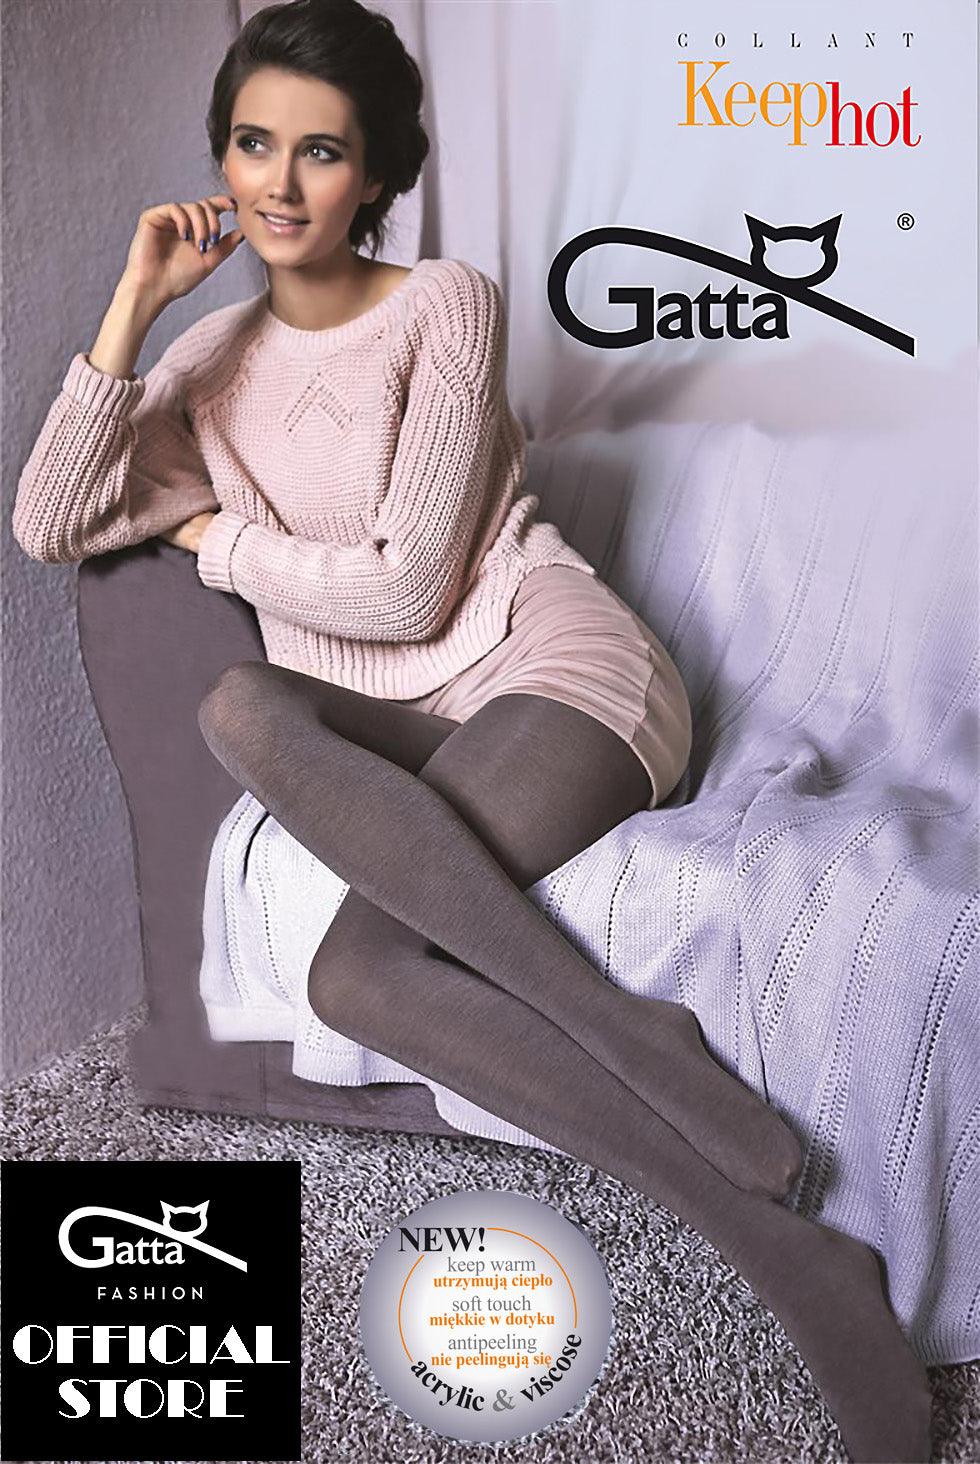 WOMEN - Tights, Leggins & Underwear  Gatta Fashion Shop – Tagged Leggings  – GATTA FASHION